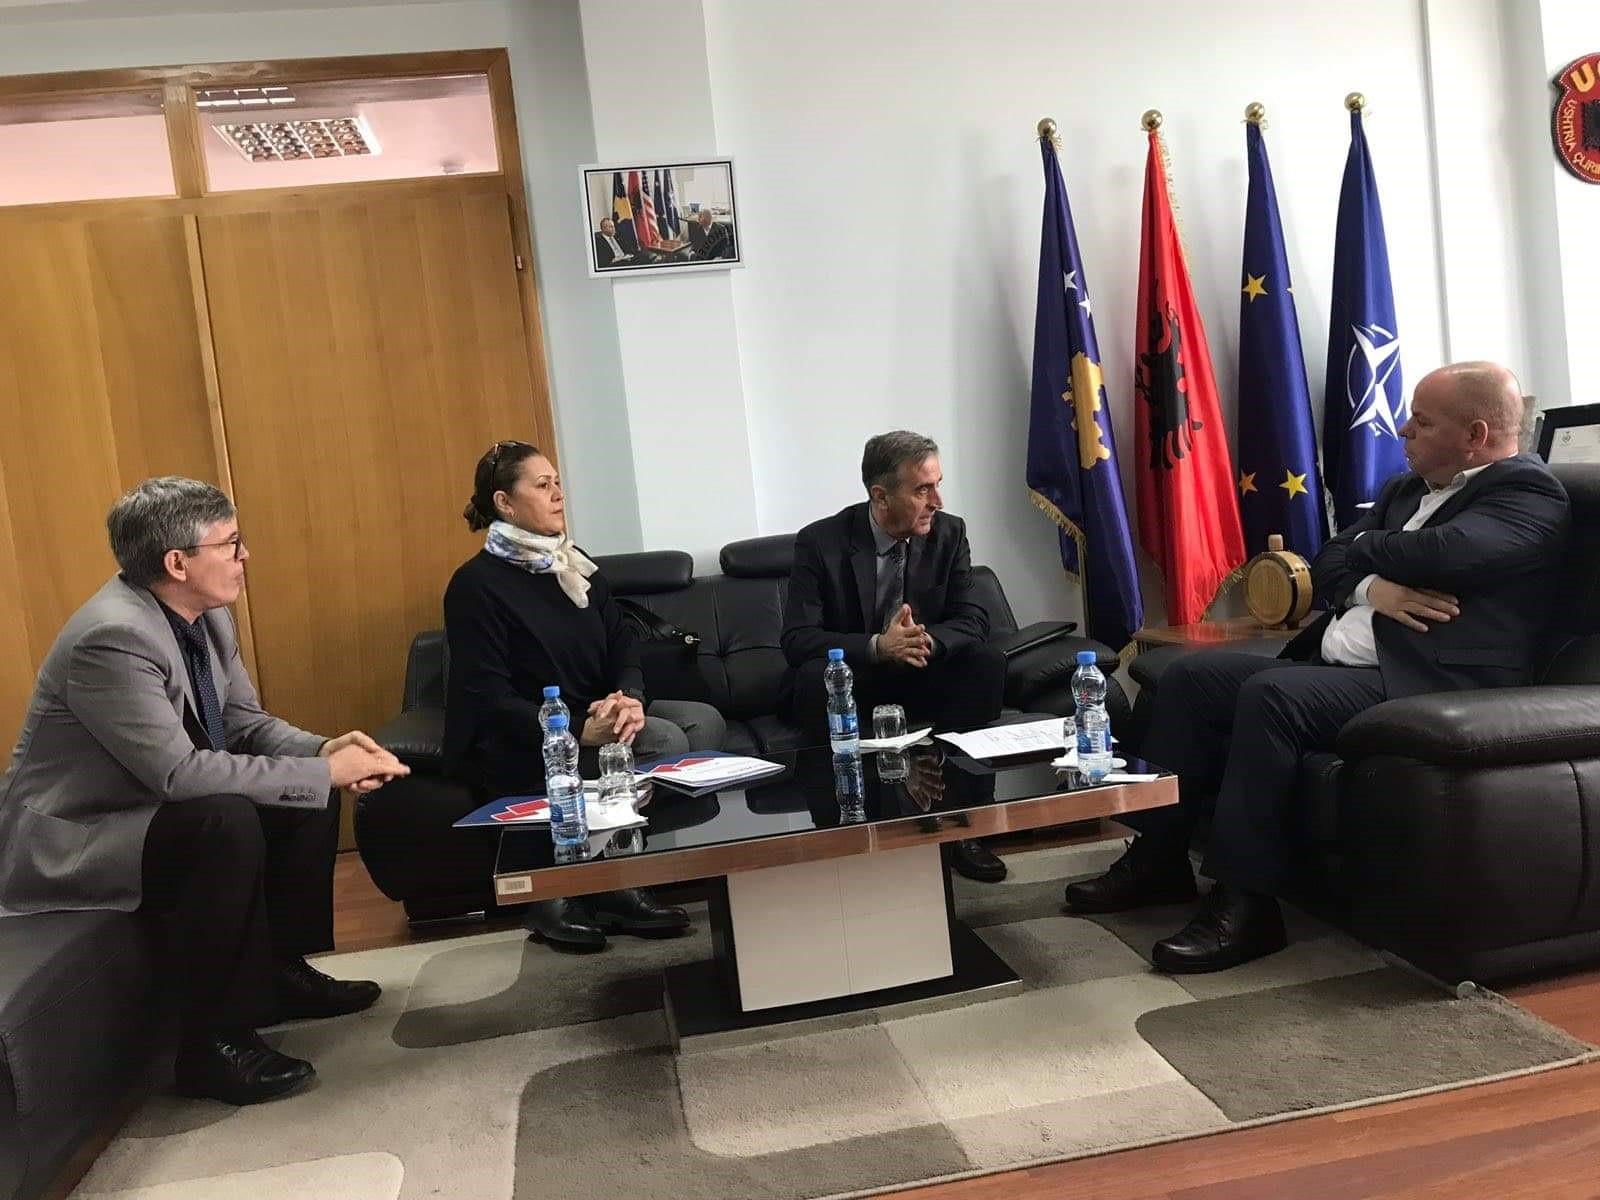 Rahoveci dhe USAID shprehin gatishmërinë për bashkëpunim të mëtutjeshëm